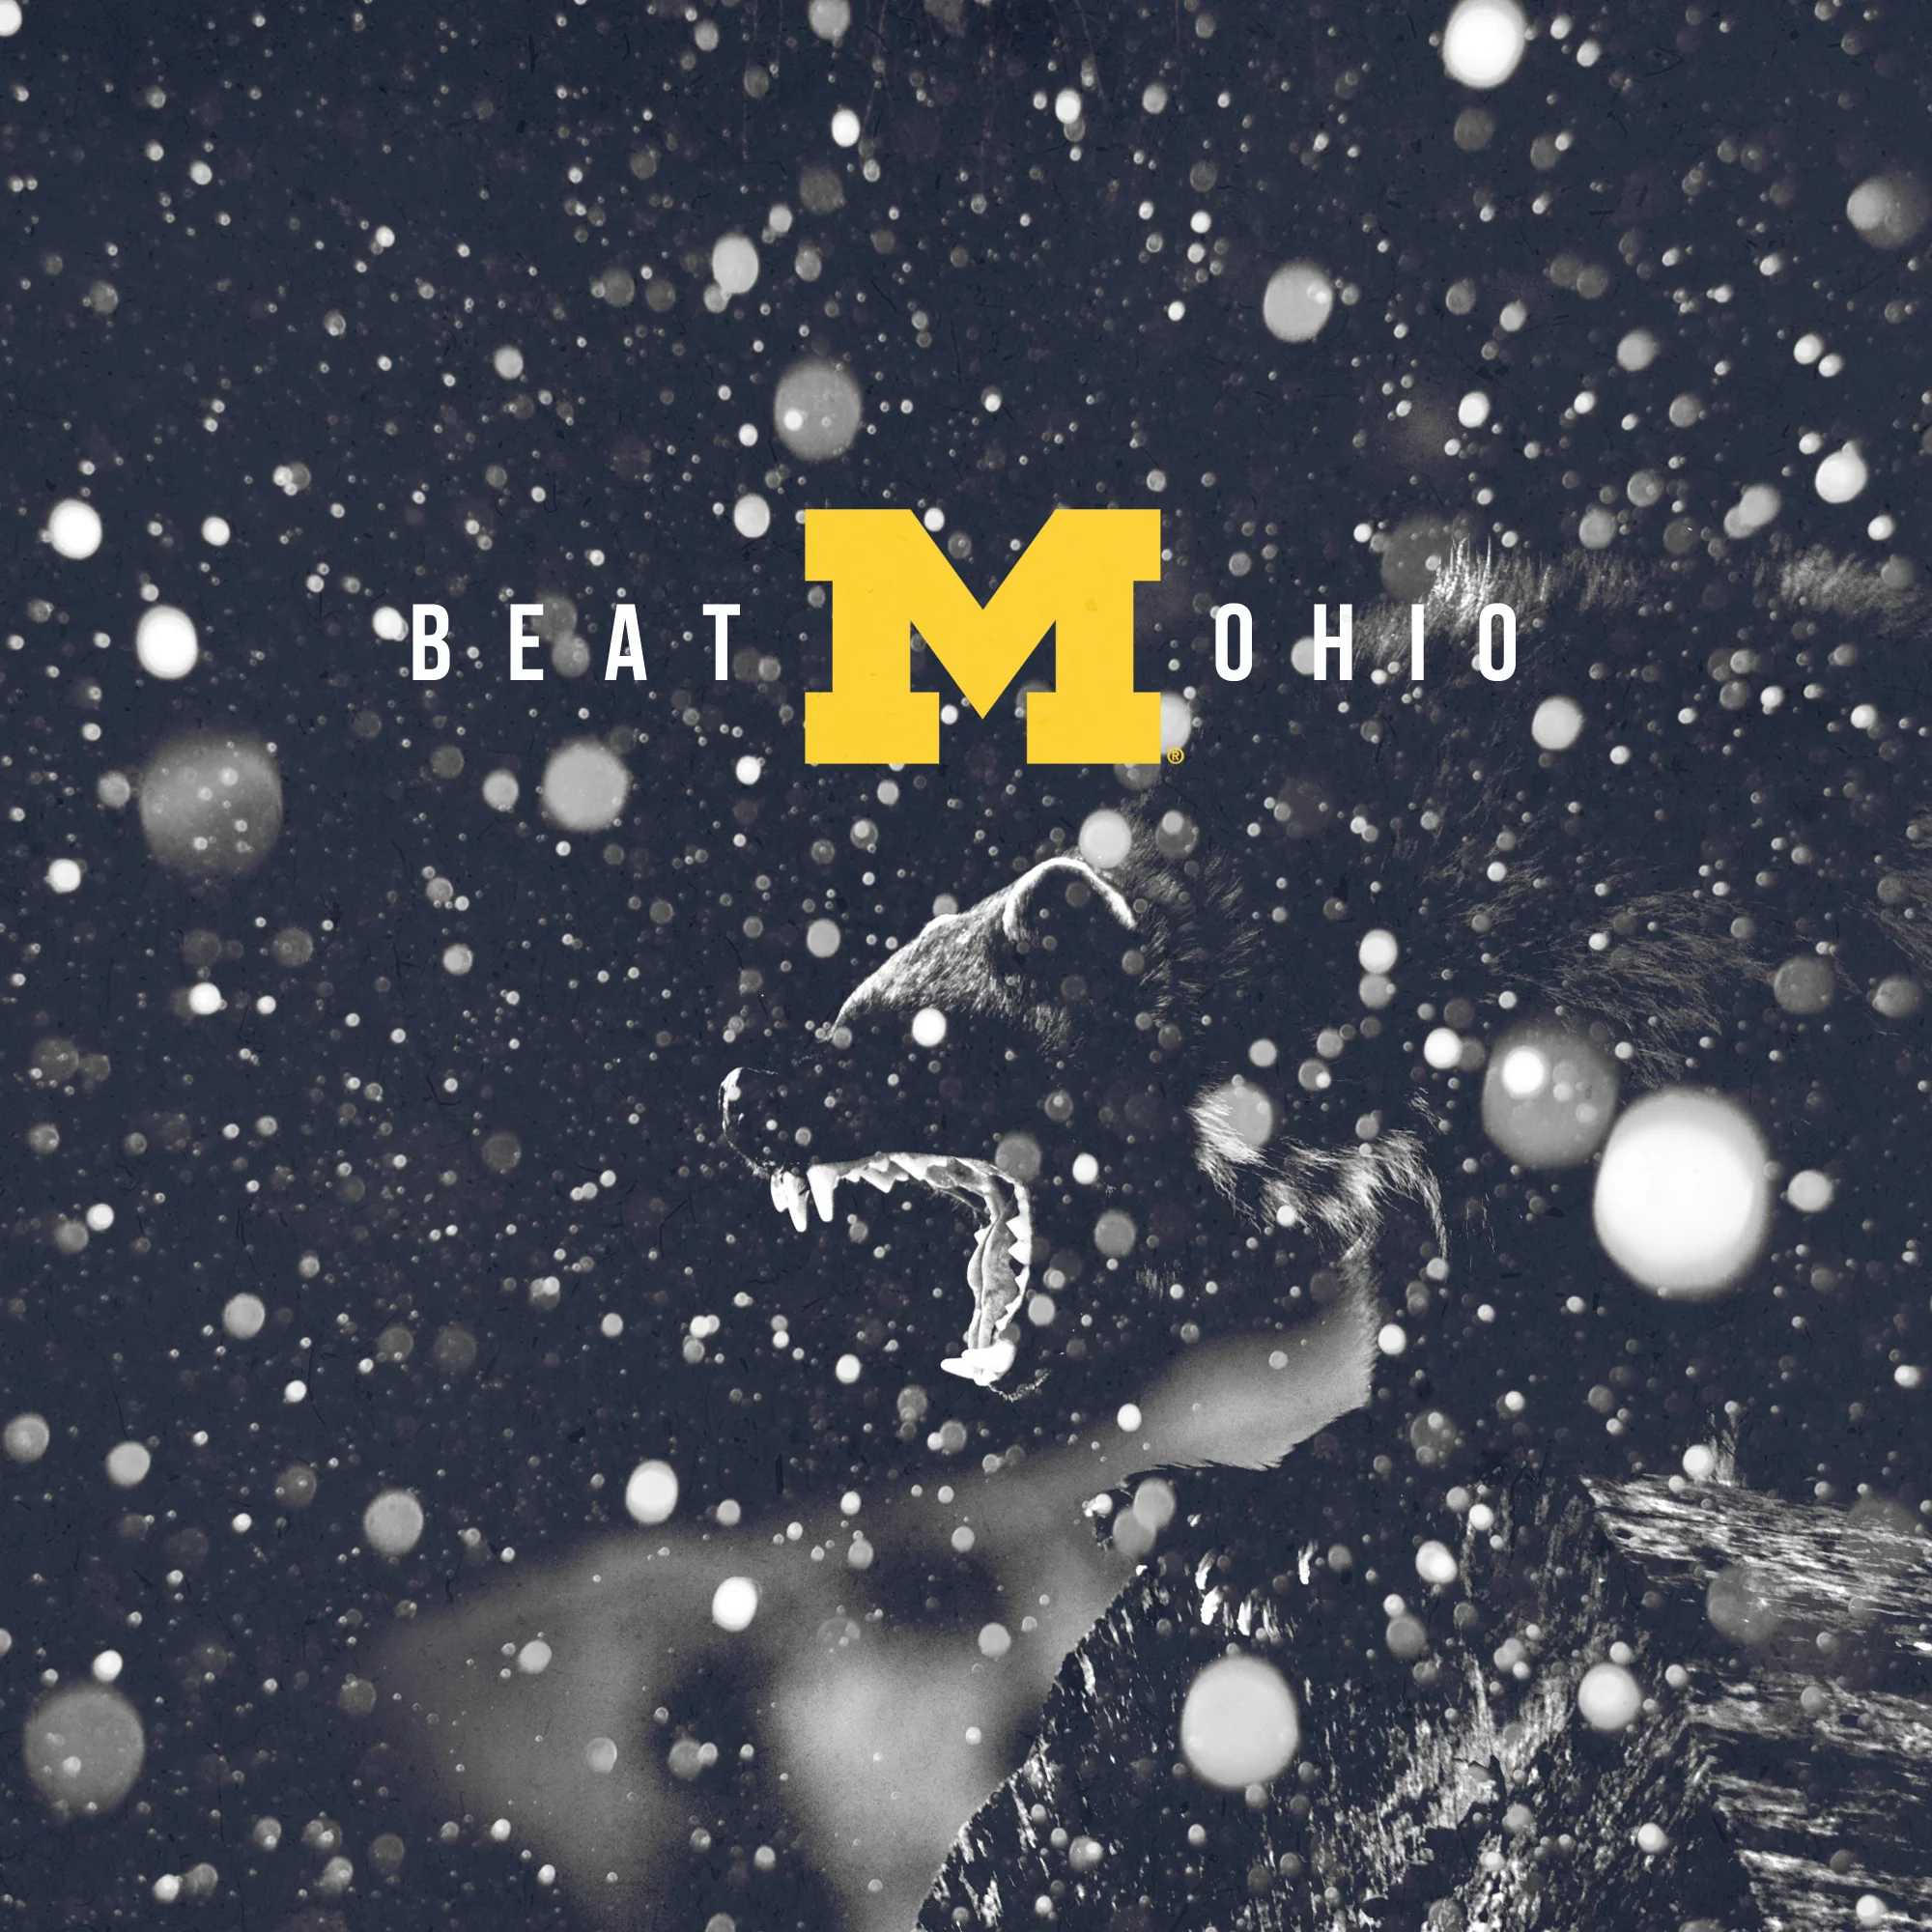 Go Blue – Beat Ohio – square format